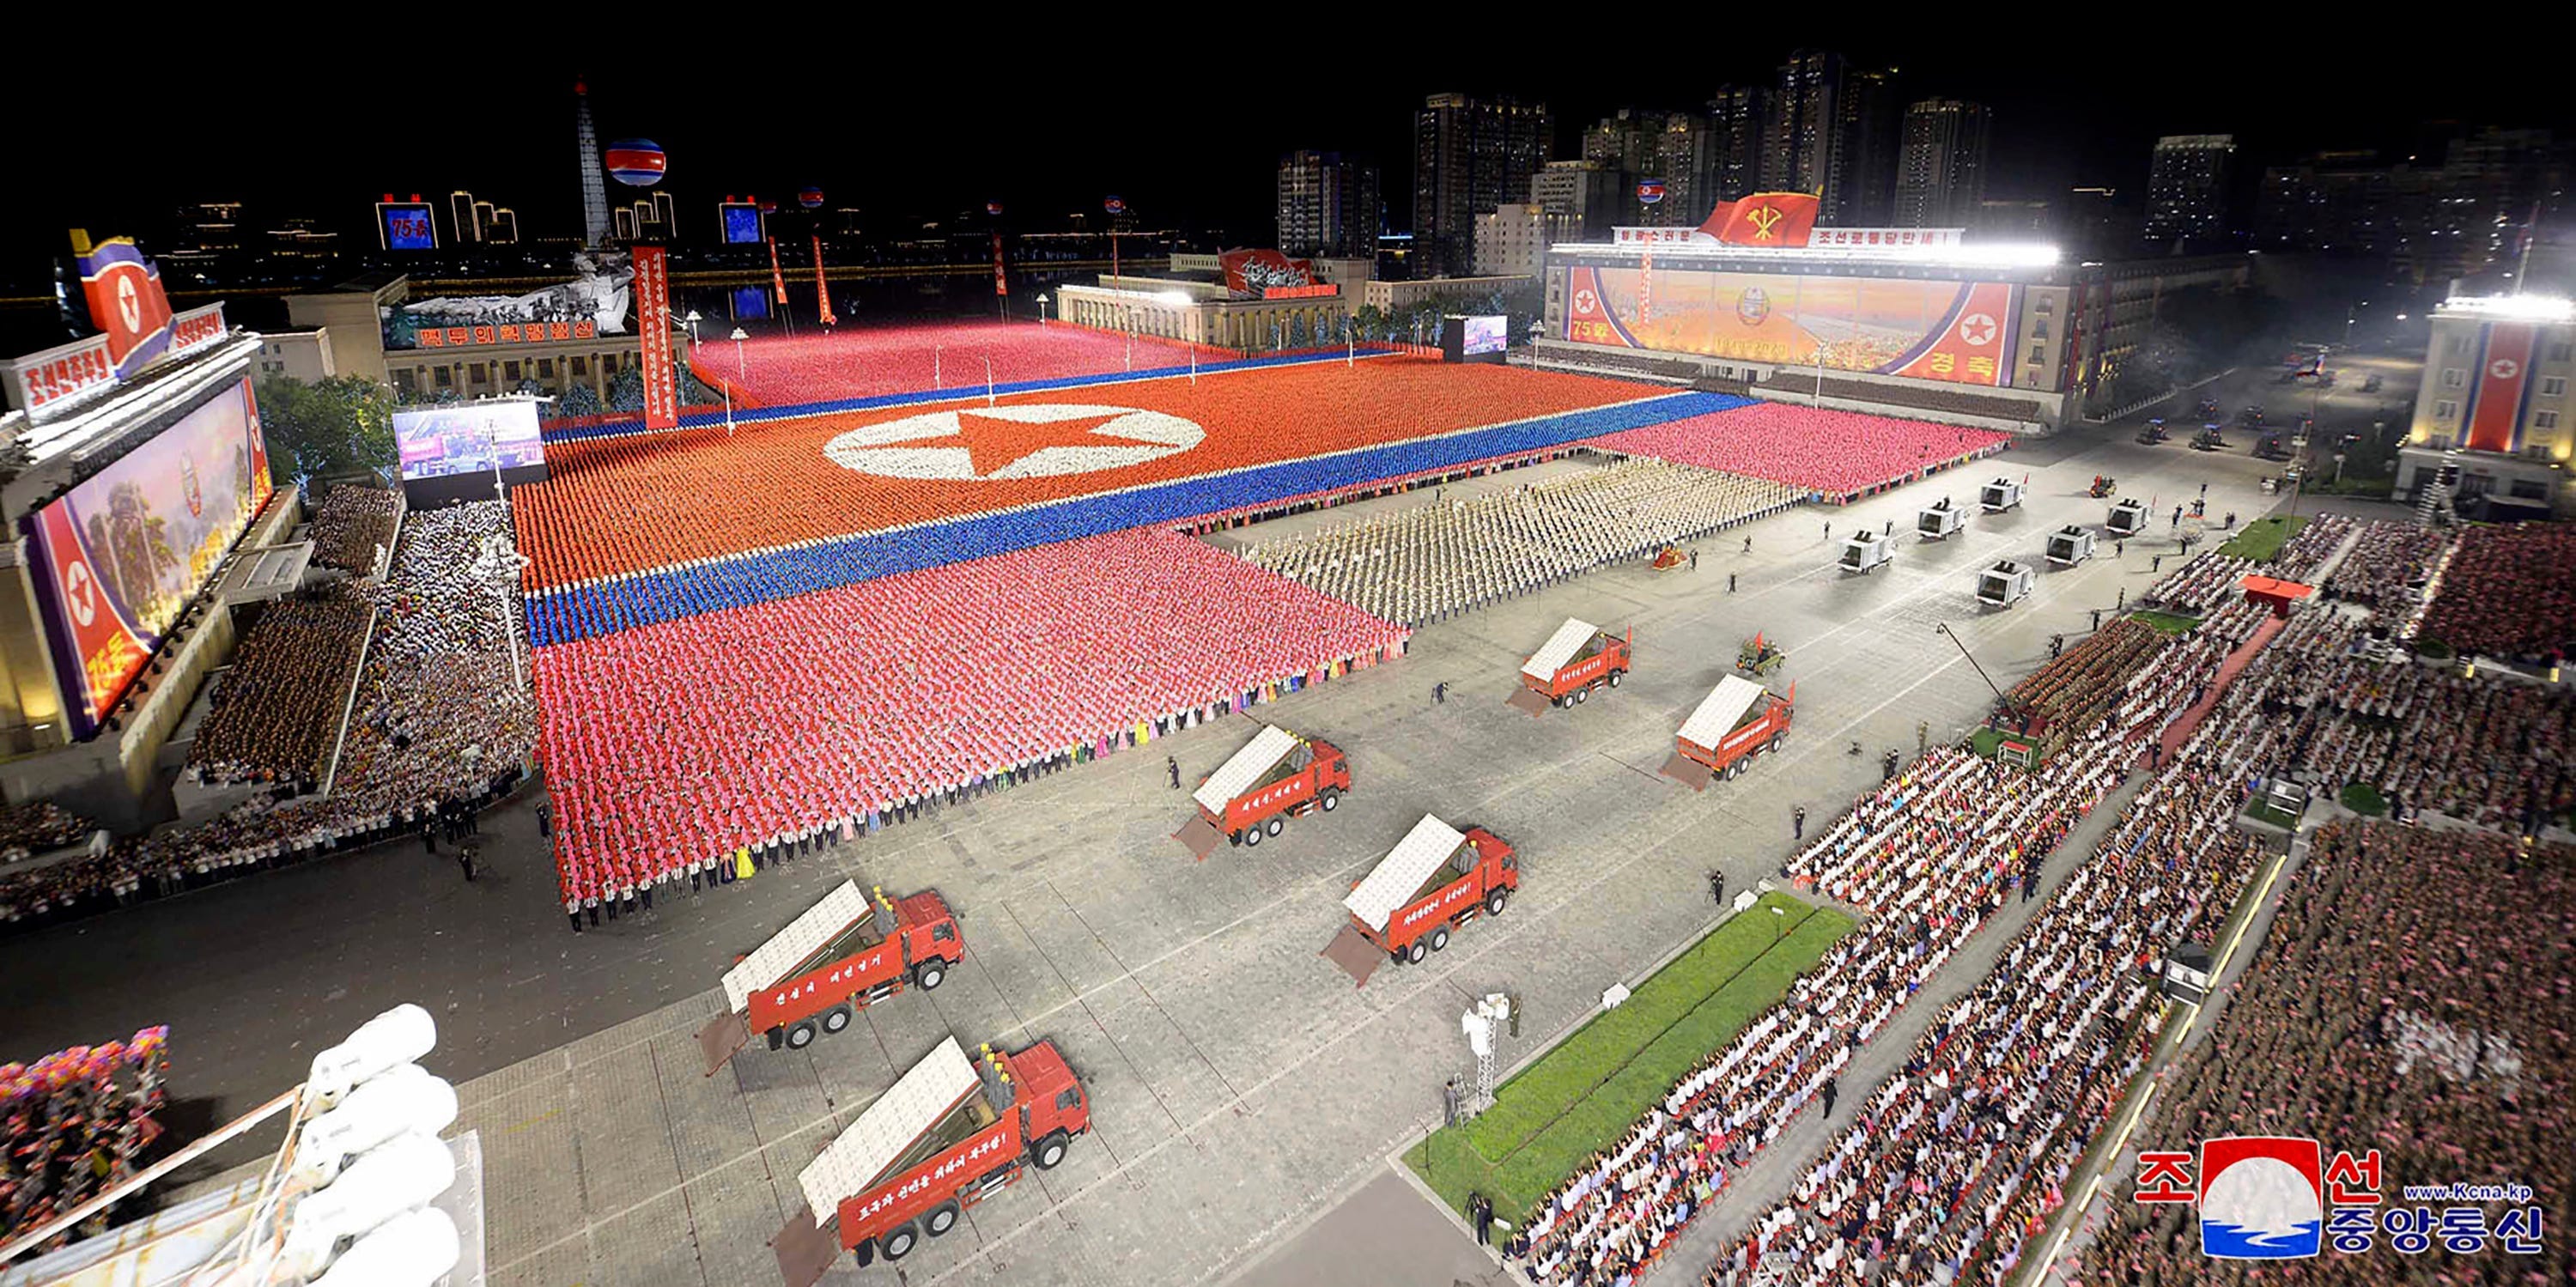 Draufsicht auf einen Platz mit Soldaten in farbigen Uniformen, die die nordkoreanische Flagge formen, während im Vordergrund rote Lastwagen zu sehen sind, aus deren Ladeflächen Raketen auftauchen